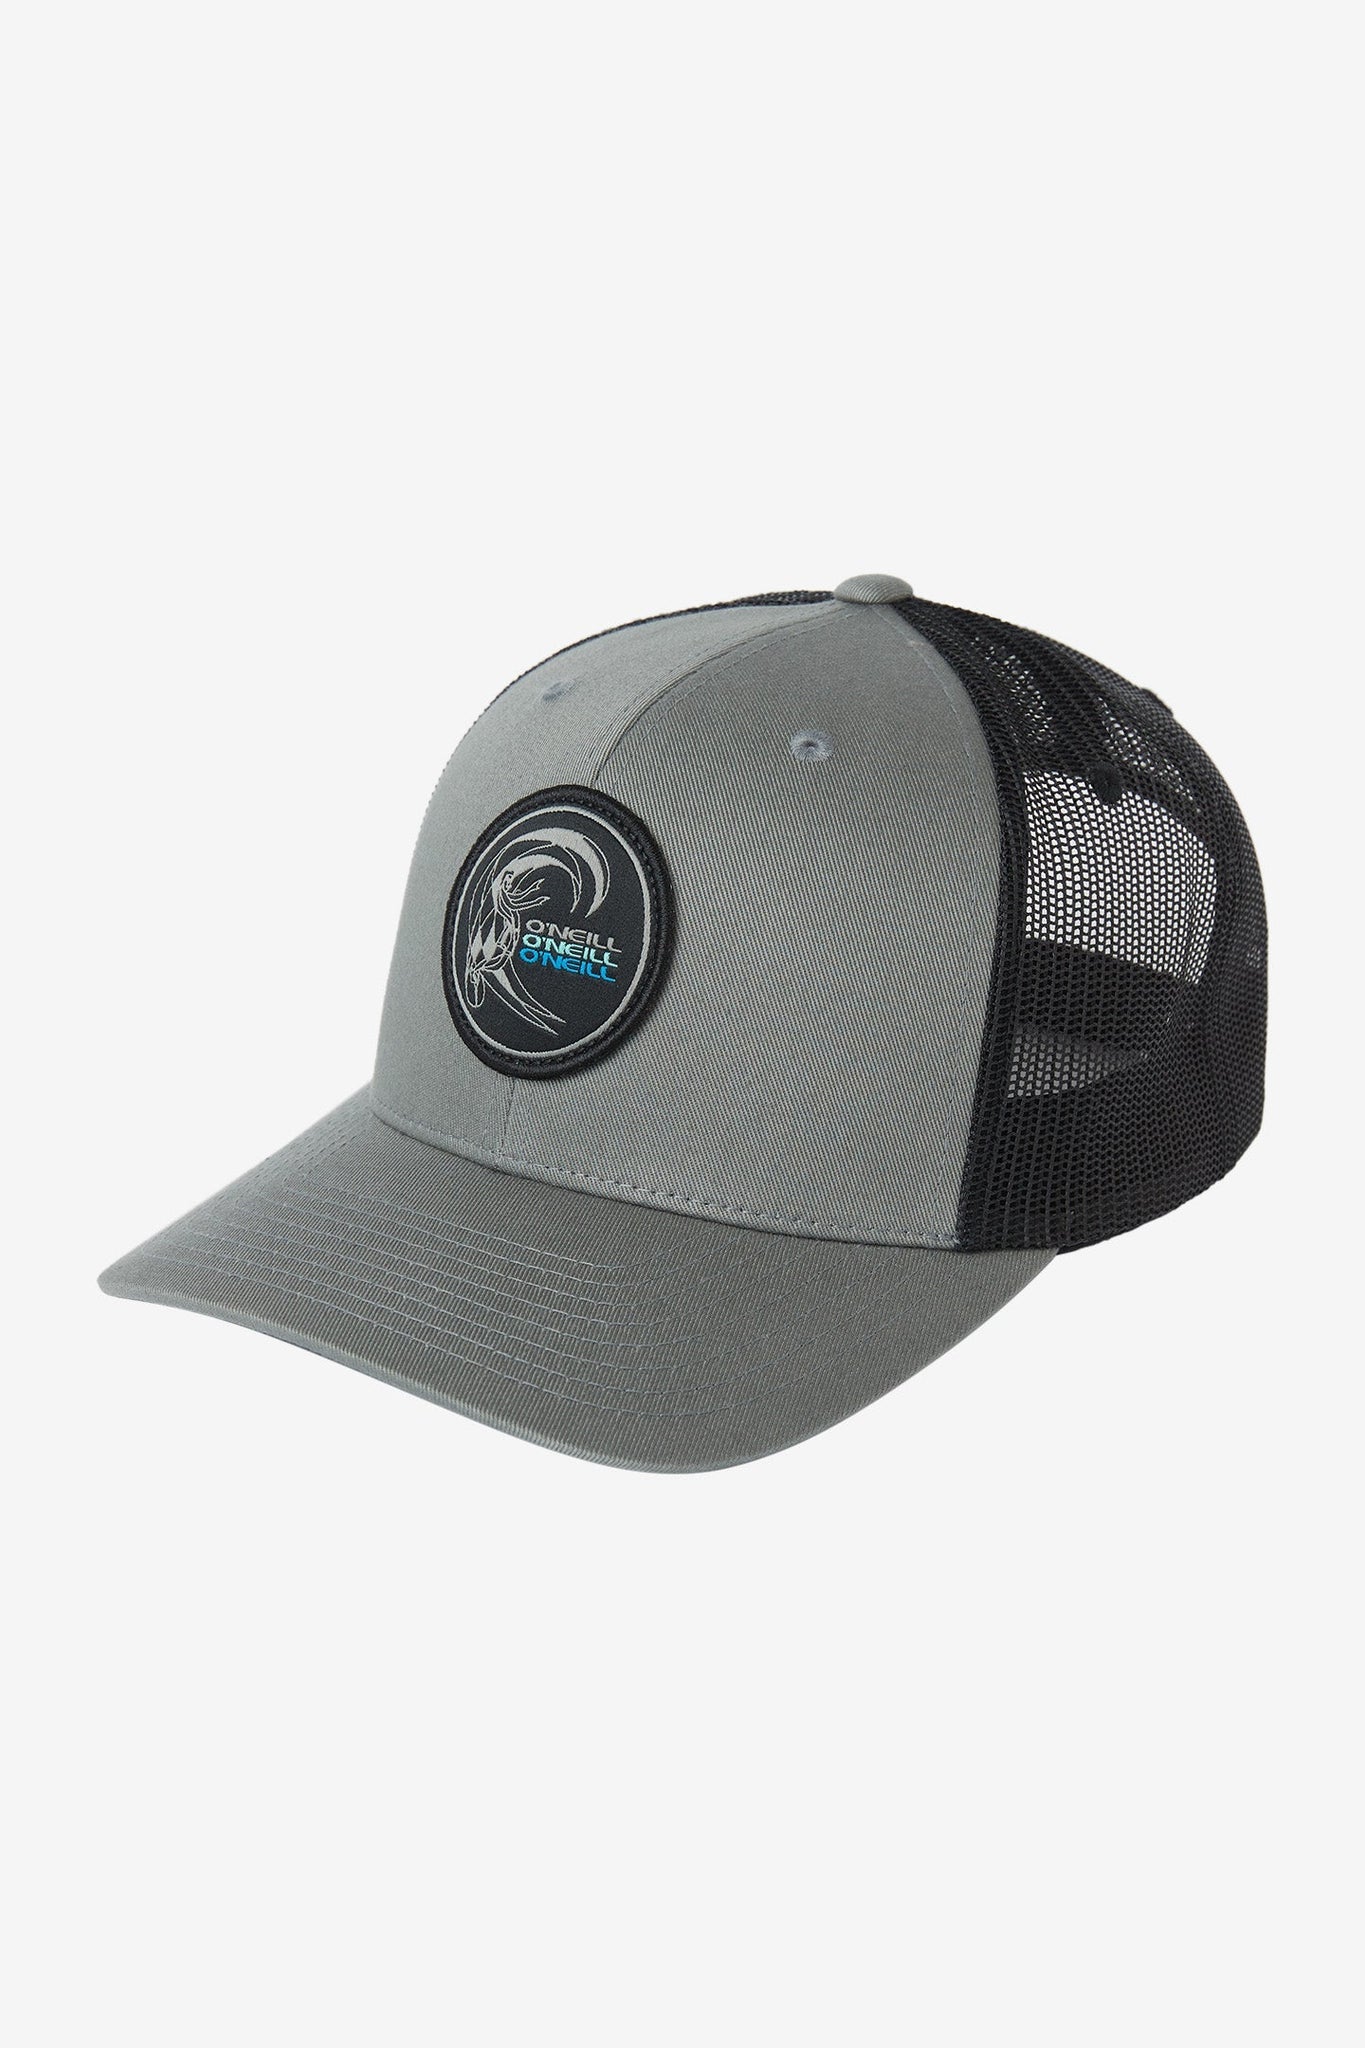 CS Trucker Hat